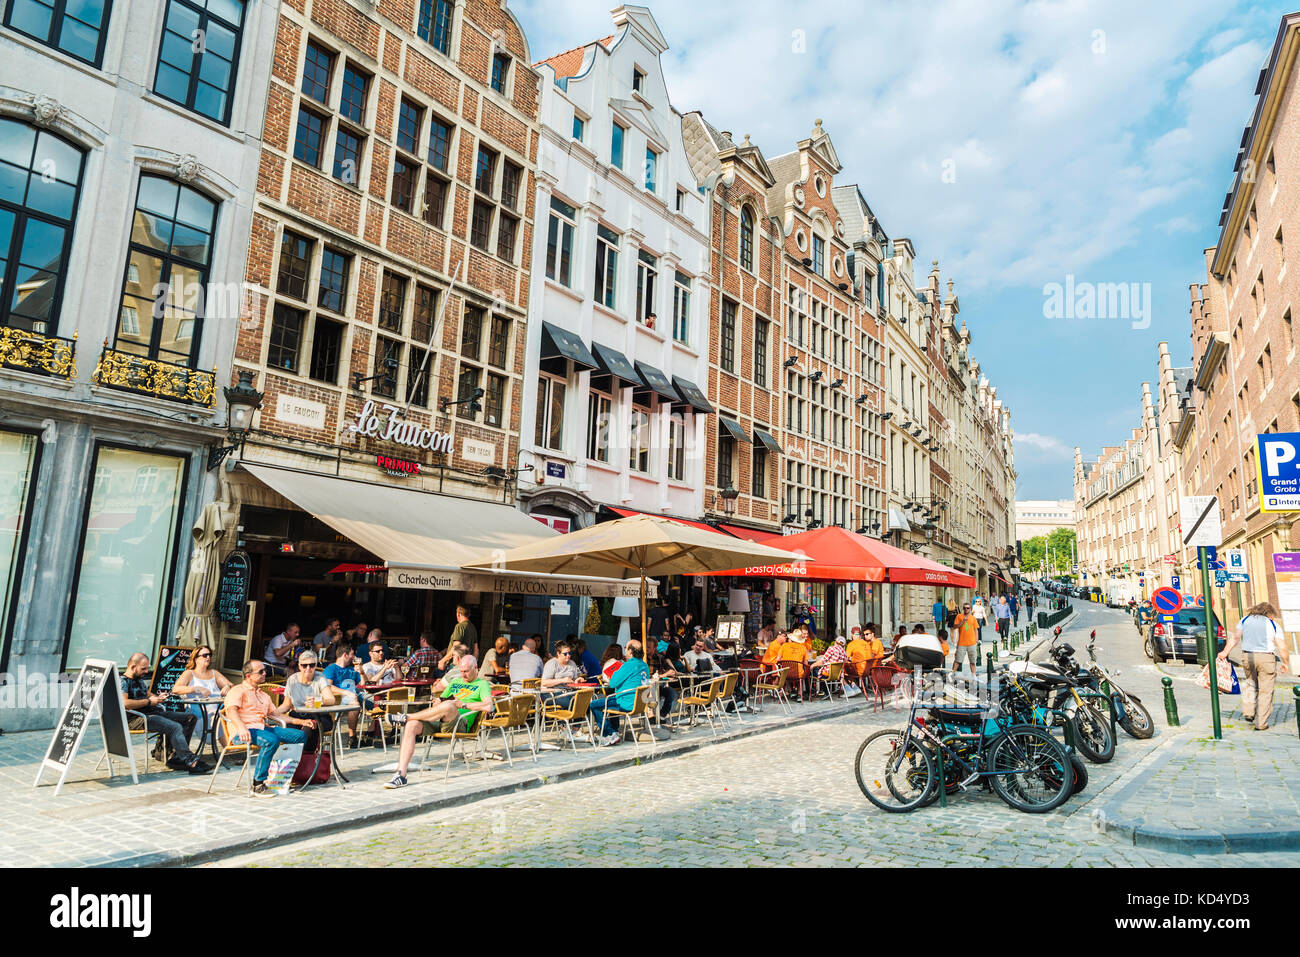 Bruxelles, Belgio - 26 agosto 2017: la gente in un bar con un drink e a camminare su una strada a Bruxelles, in Belgio Foto Stock